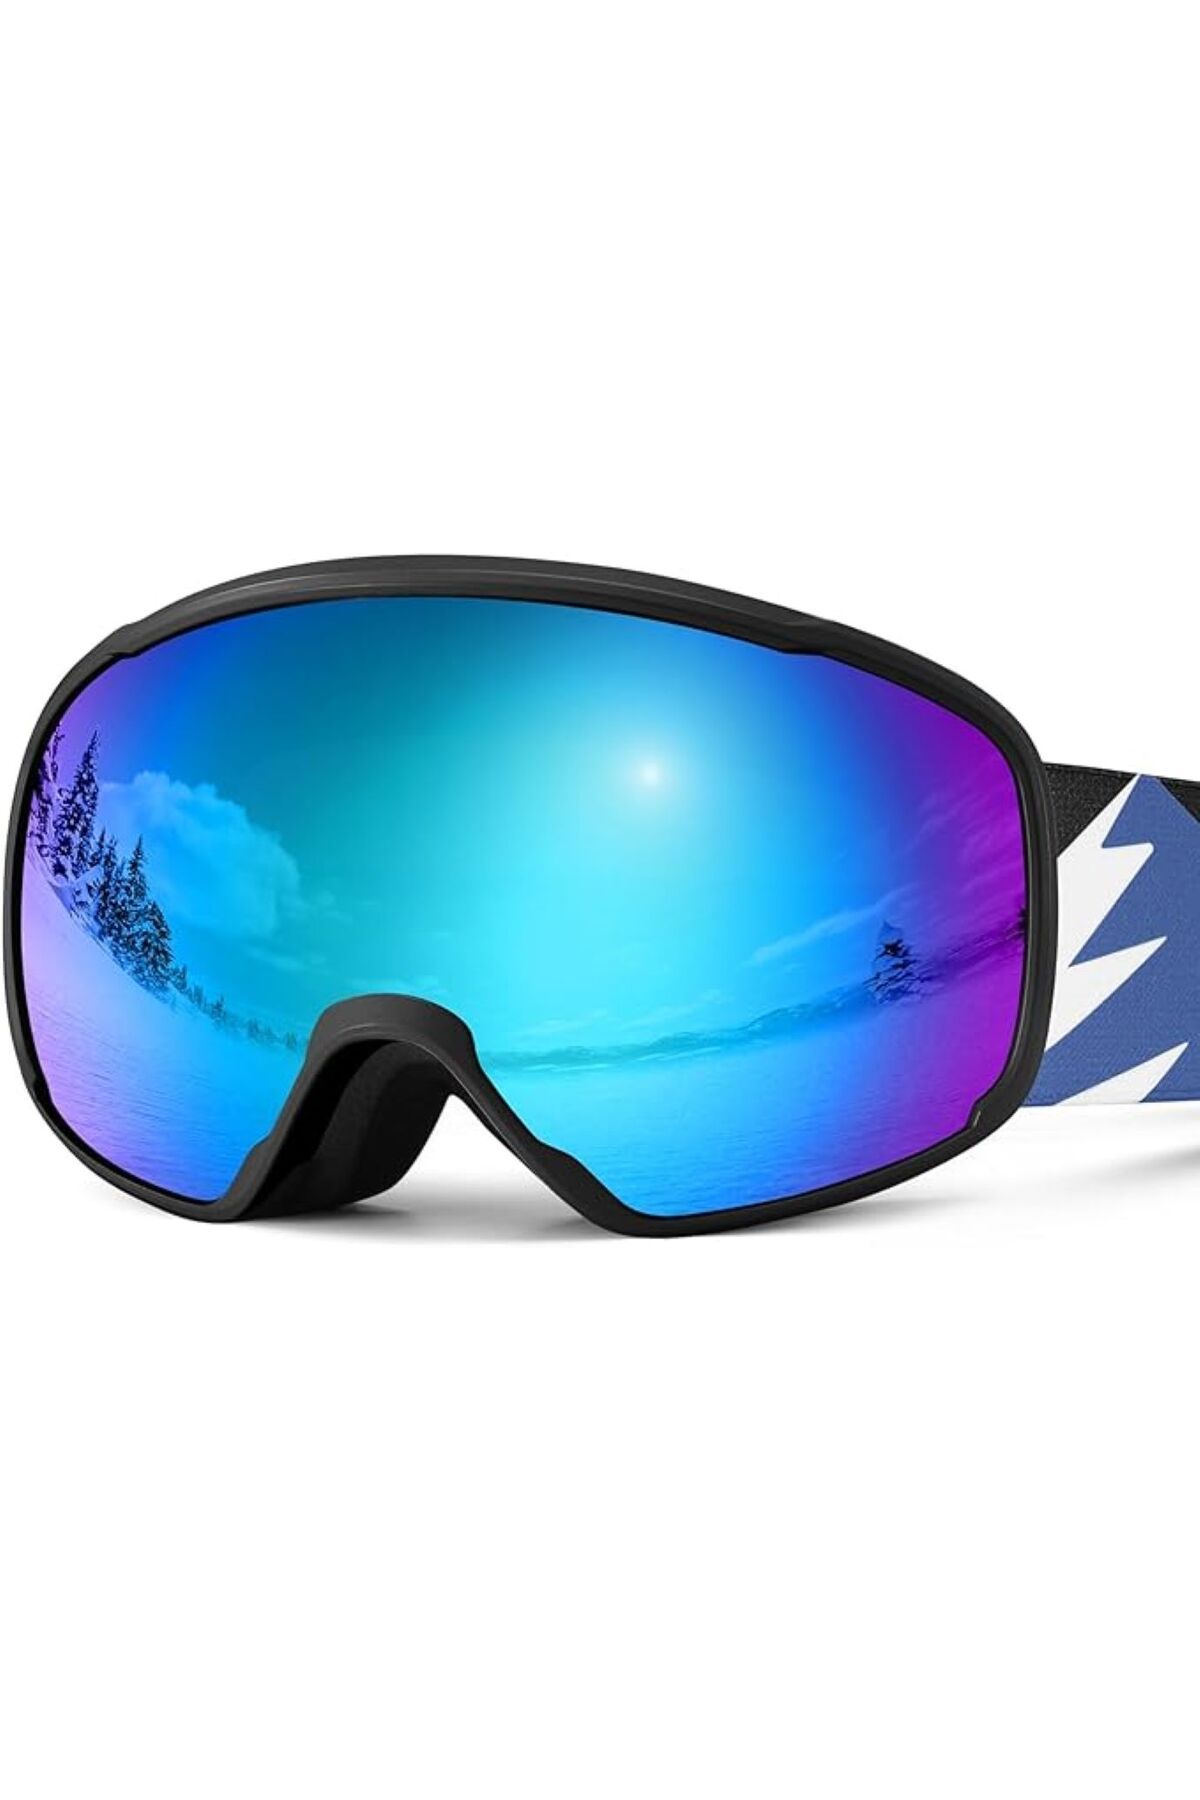 Odoland Çocuklar için UV Koruması ve Buğu Önleyici Lens OTG Kayak Gözlüğü